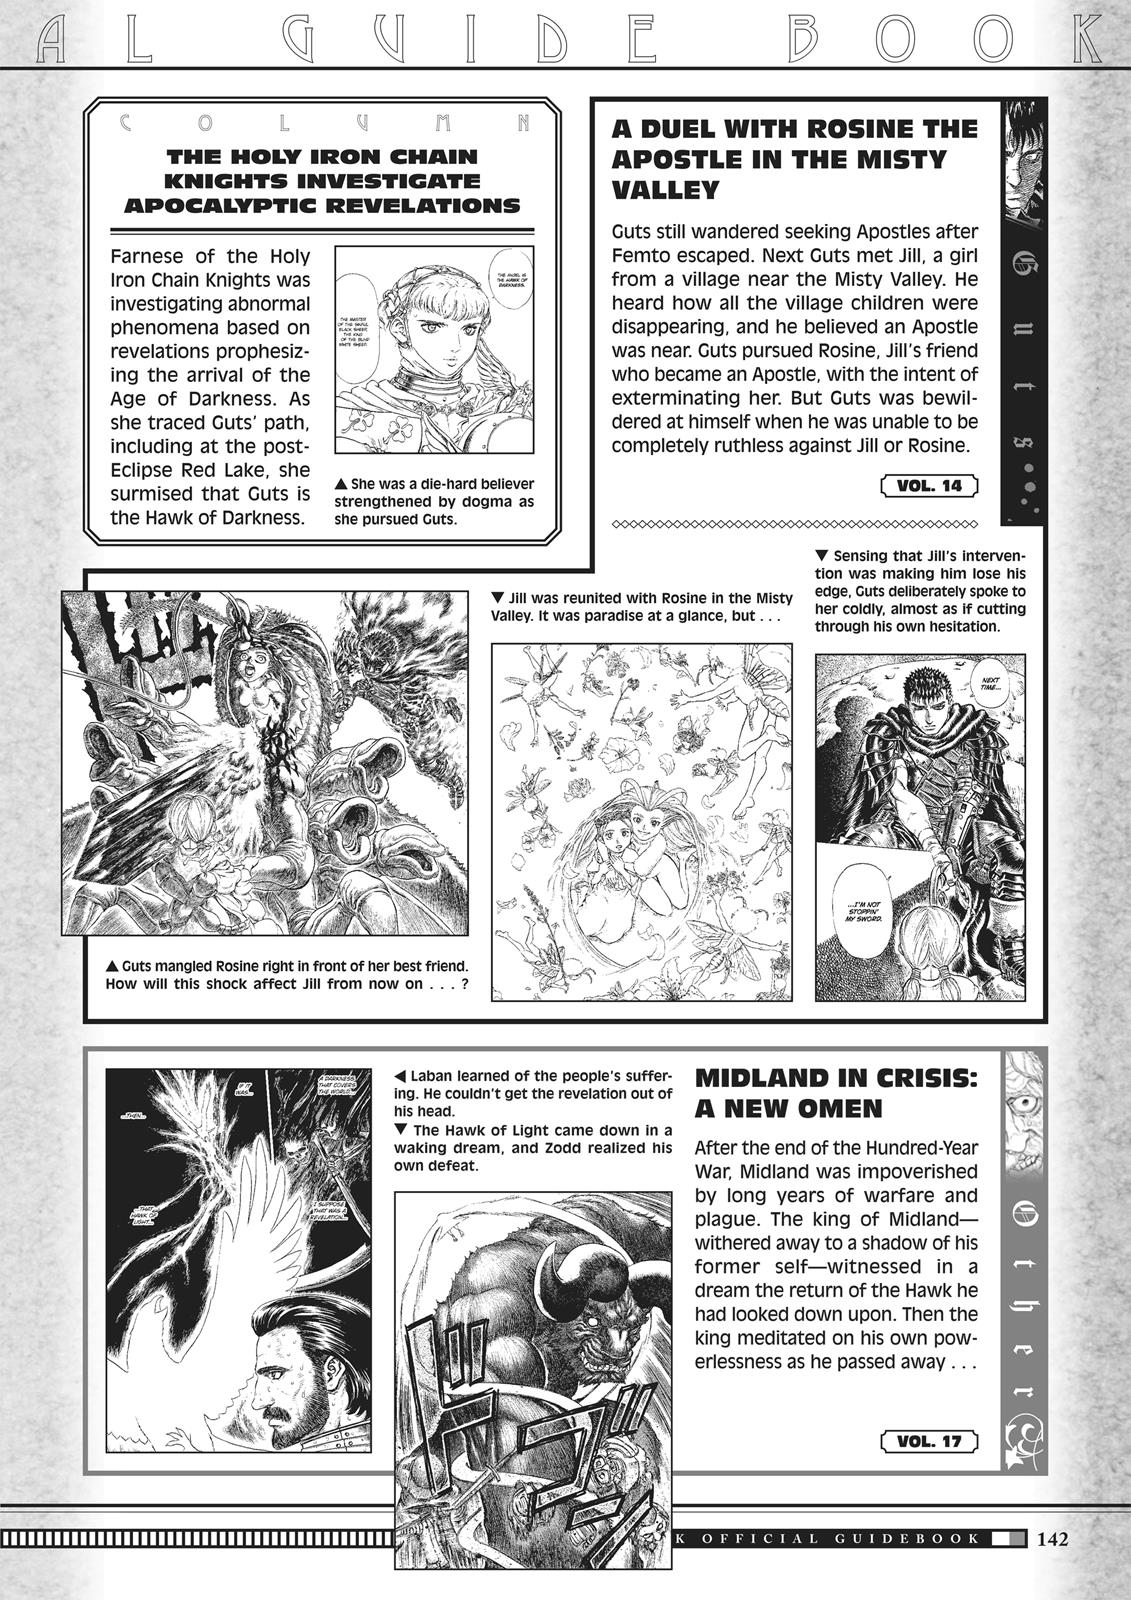 Berserk Manga Chapter 350.5 image 140